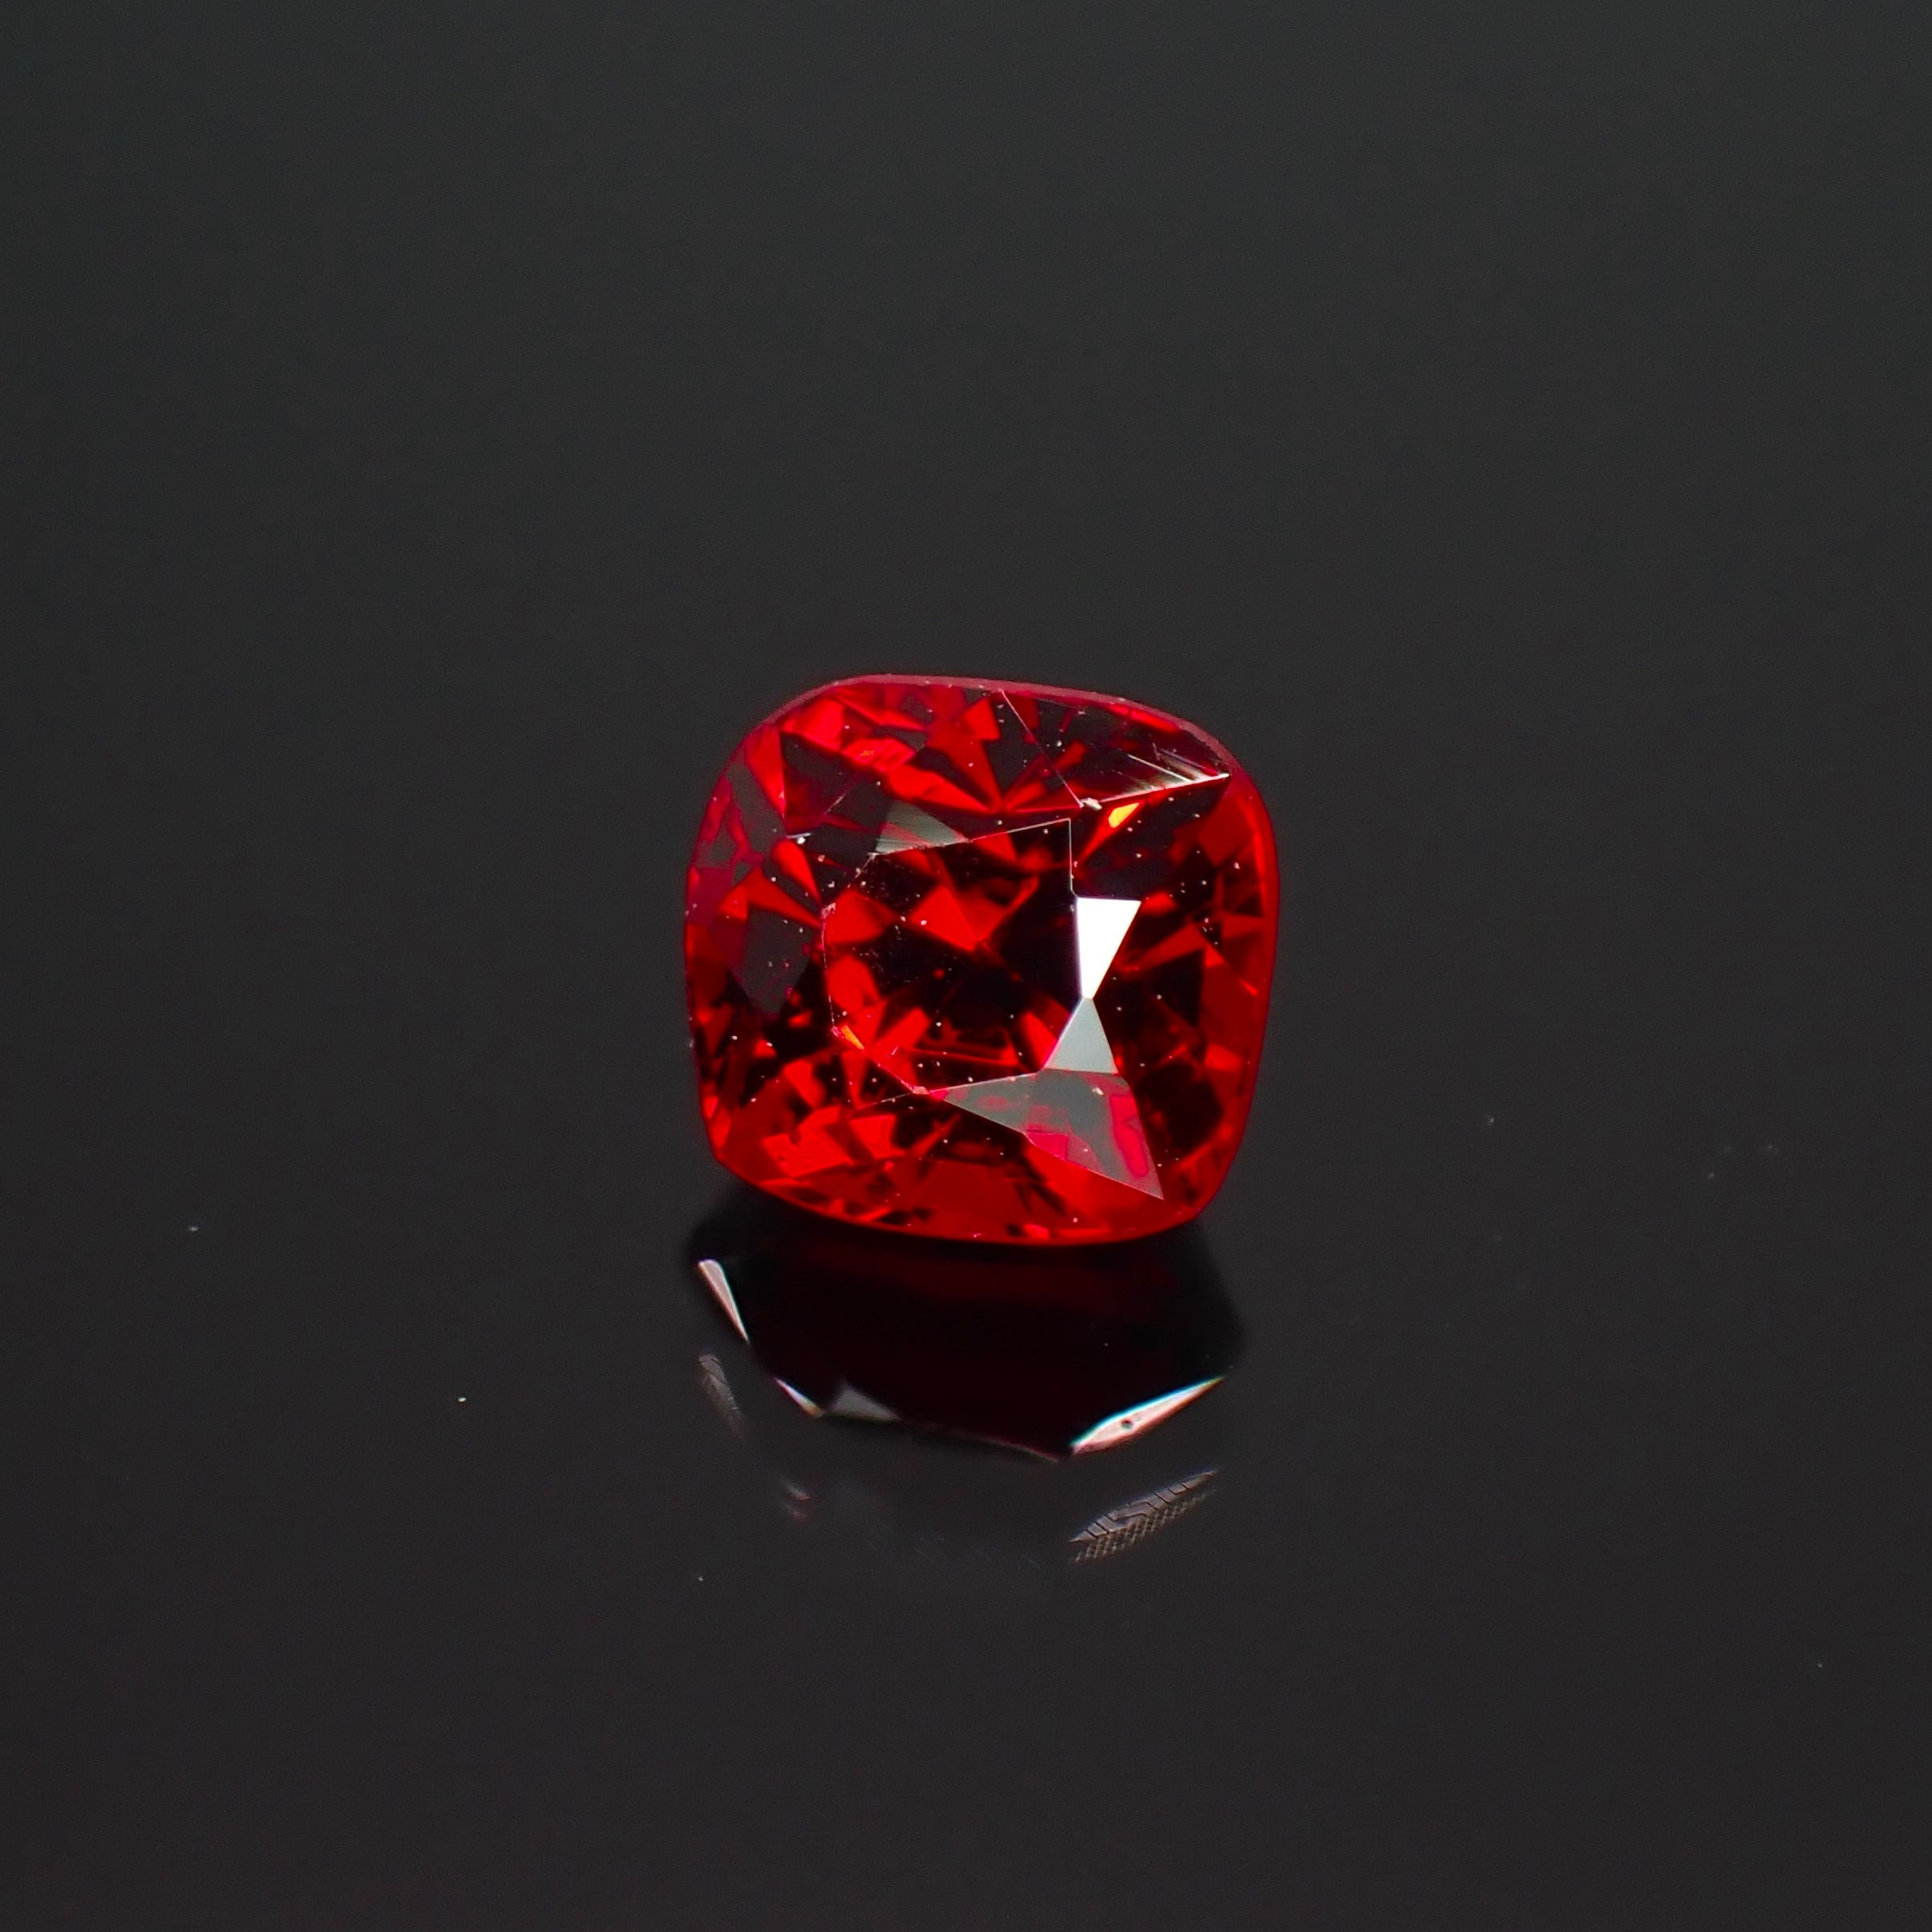 生命力溢れる深紅の宝石 0.48ct 天然 レッドスピネル | Frederick’s Gems&Jewelry powered by BASE